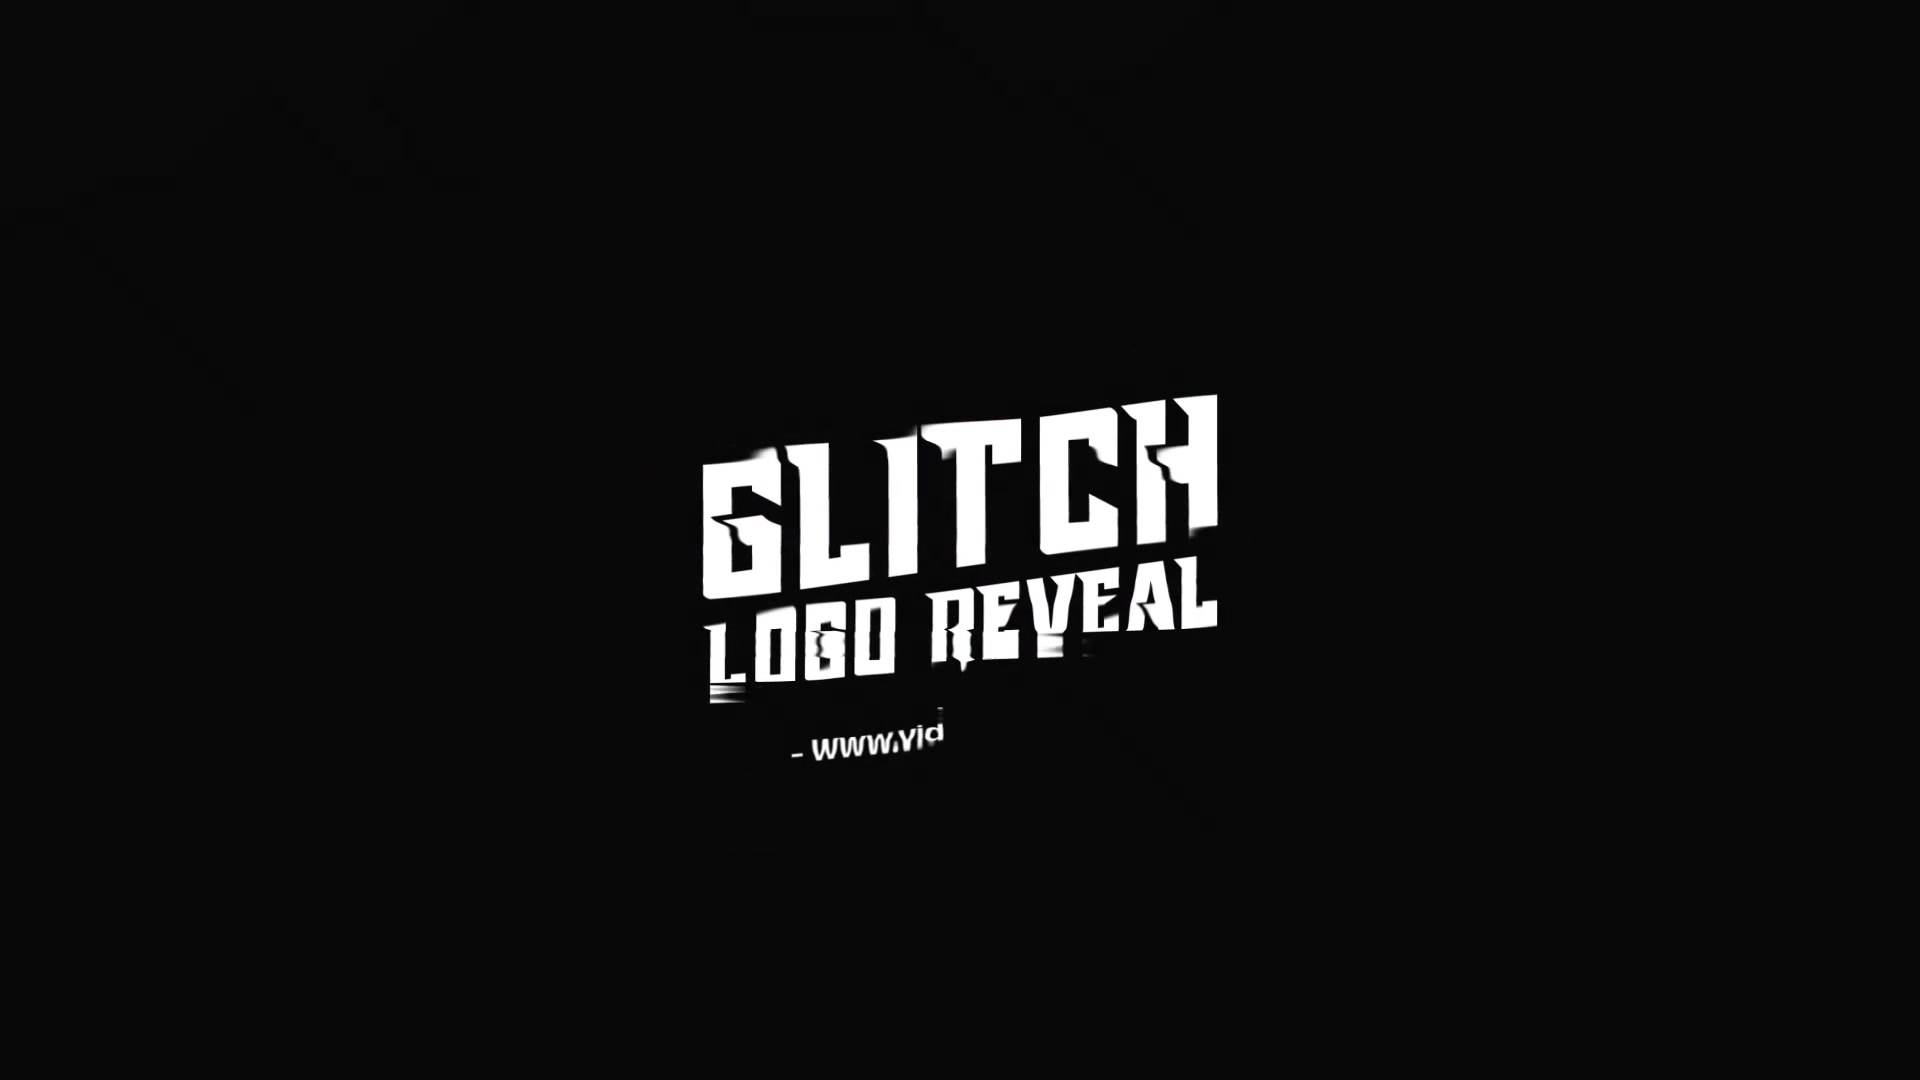 Fast Glitch Logo Reveal Template Videohive 34195503 Premiere Pro Image 4